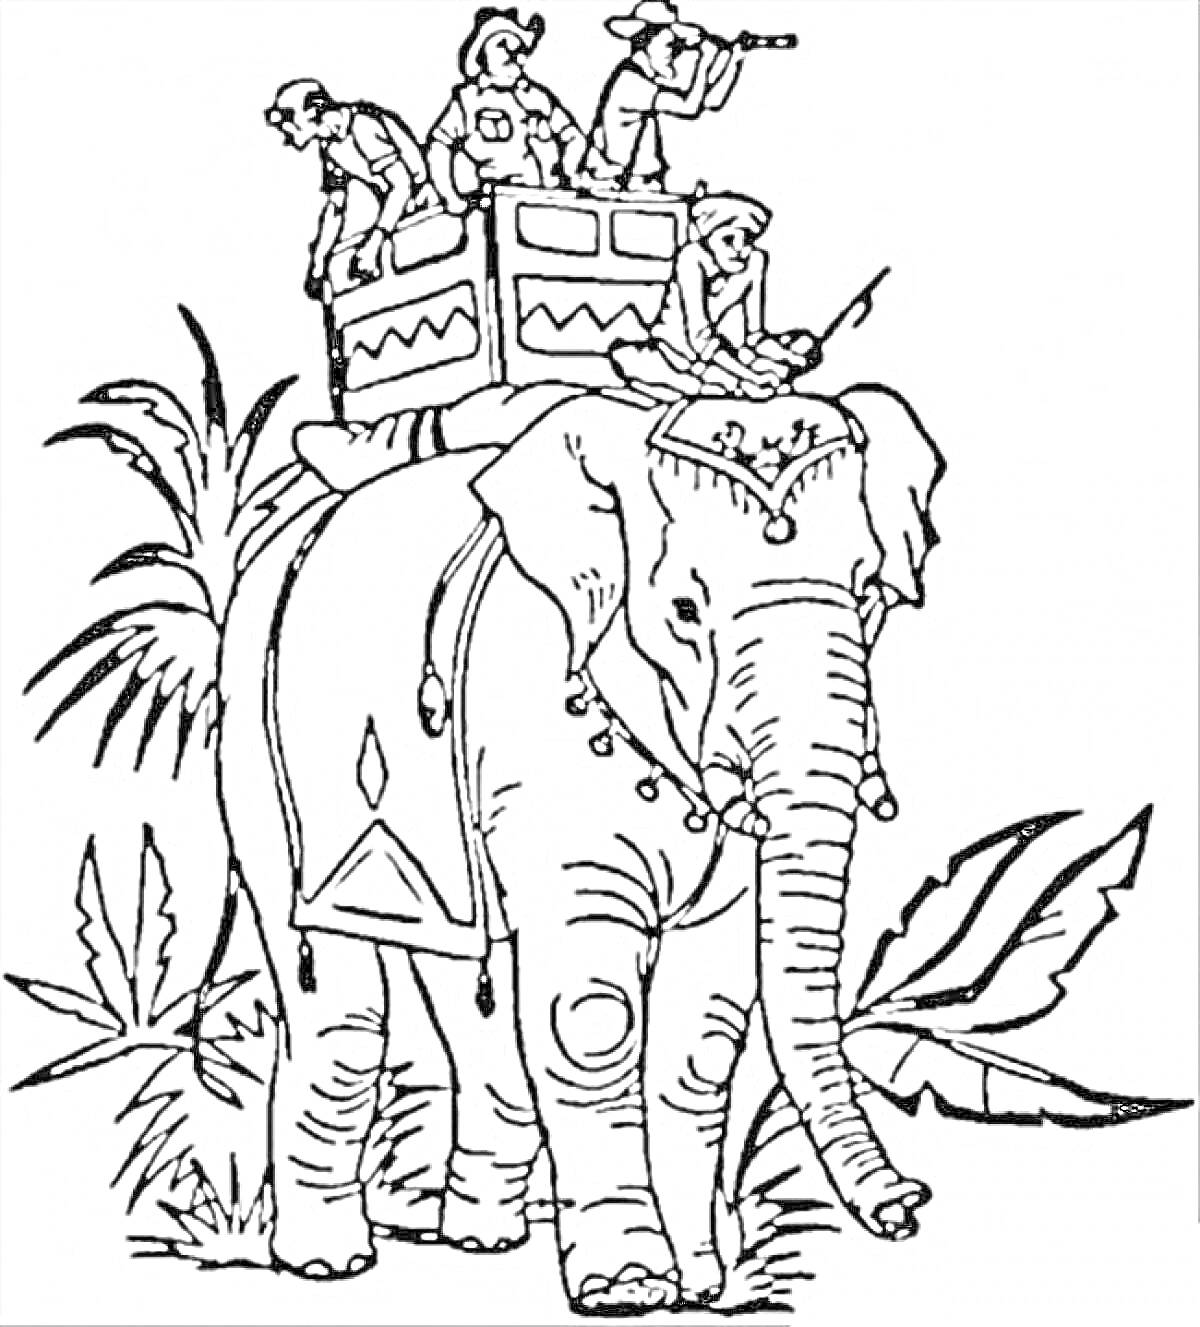 Слоны, люди на спине слона, пальмы и растительность